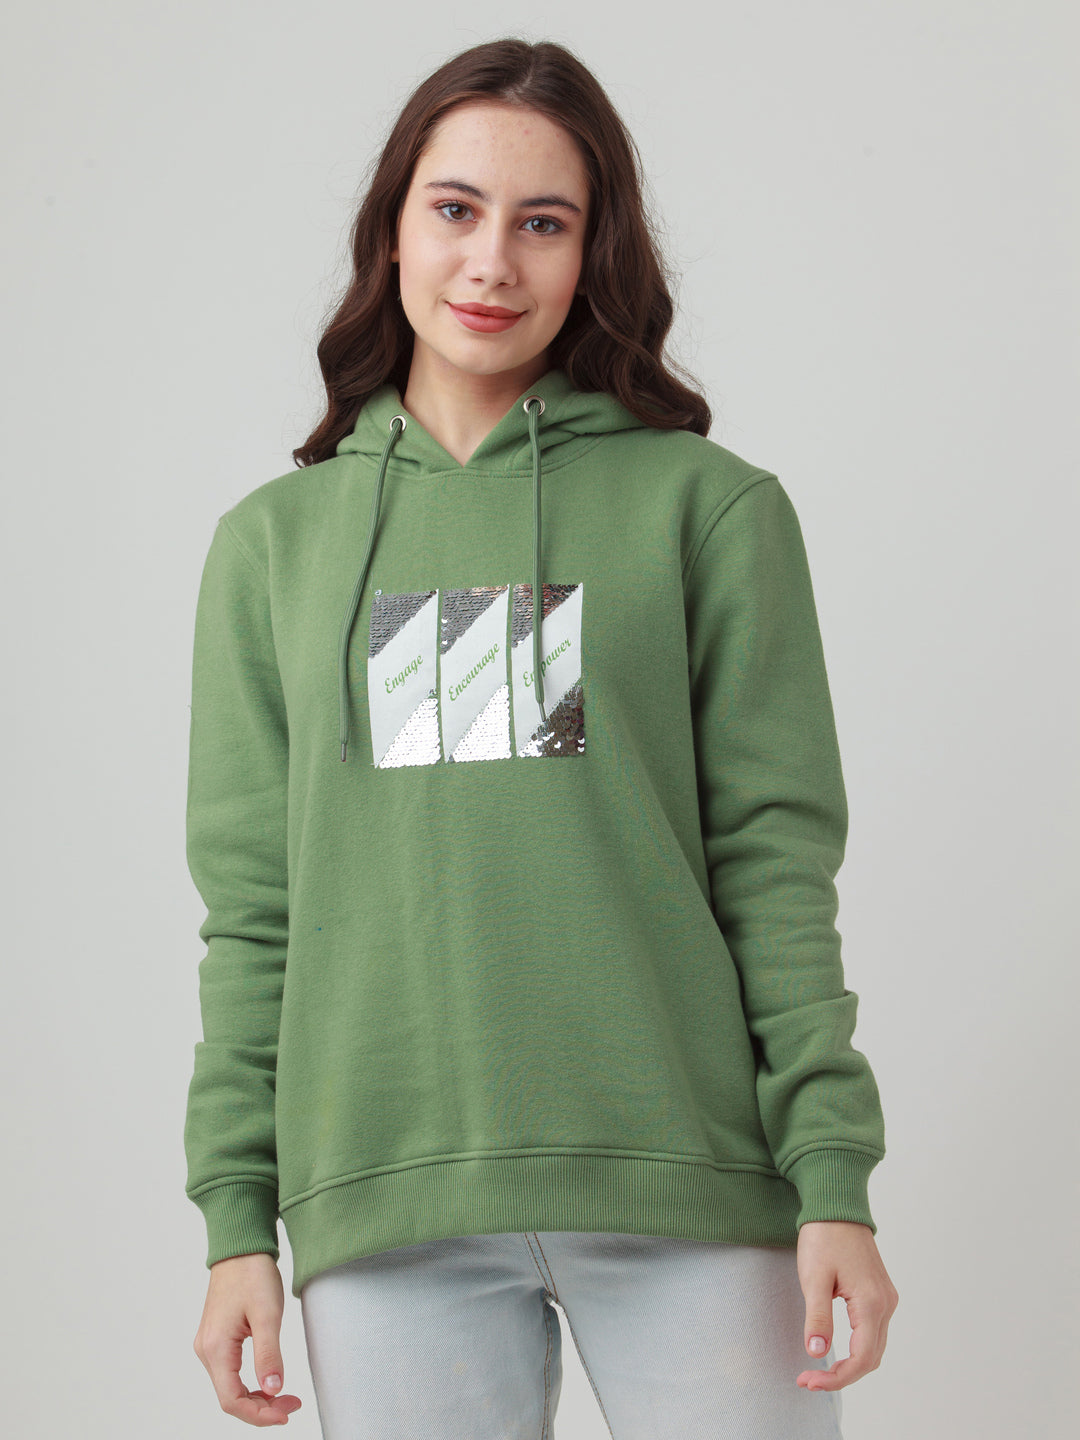 Green Solid Hoodie Sweatshirt For Women